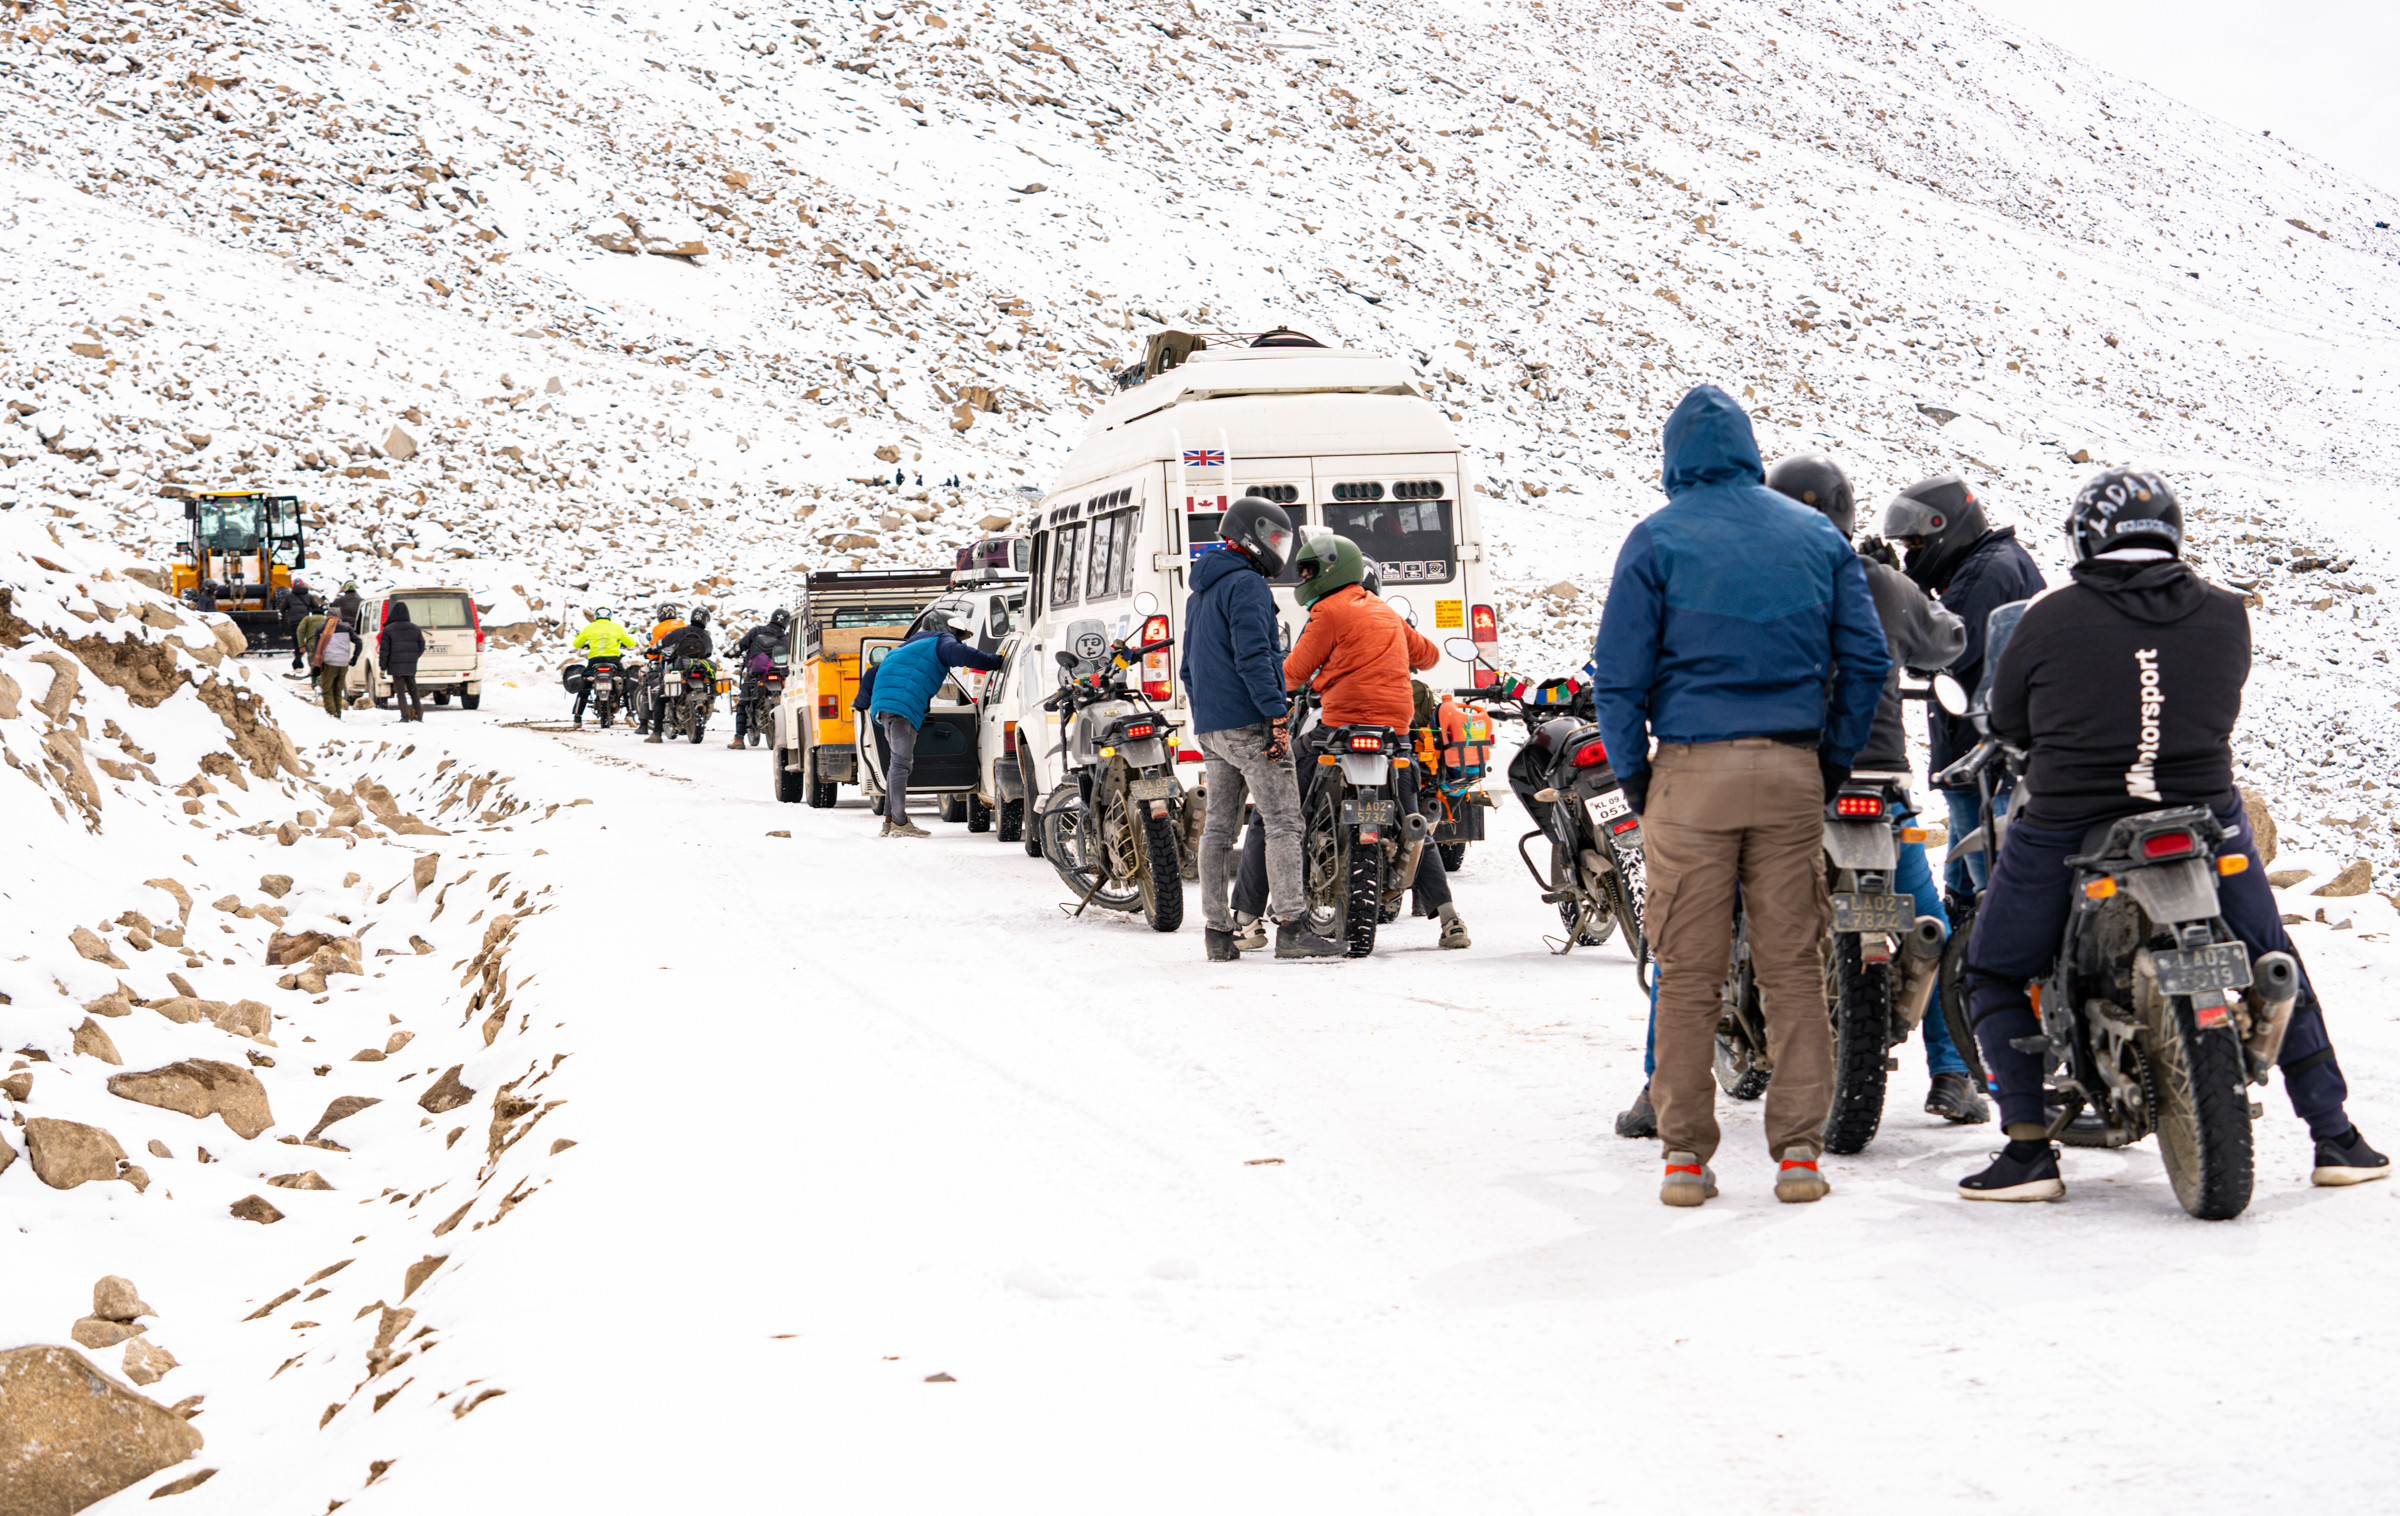 Chàng trai Việt phượt xe máy trên cung đường Ladakh đẹp hơn những giấc mơ